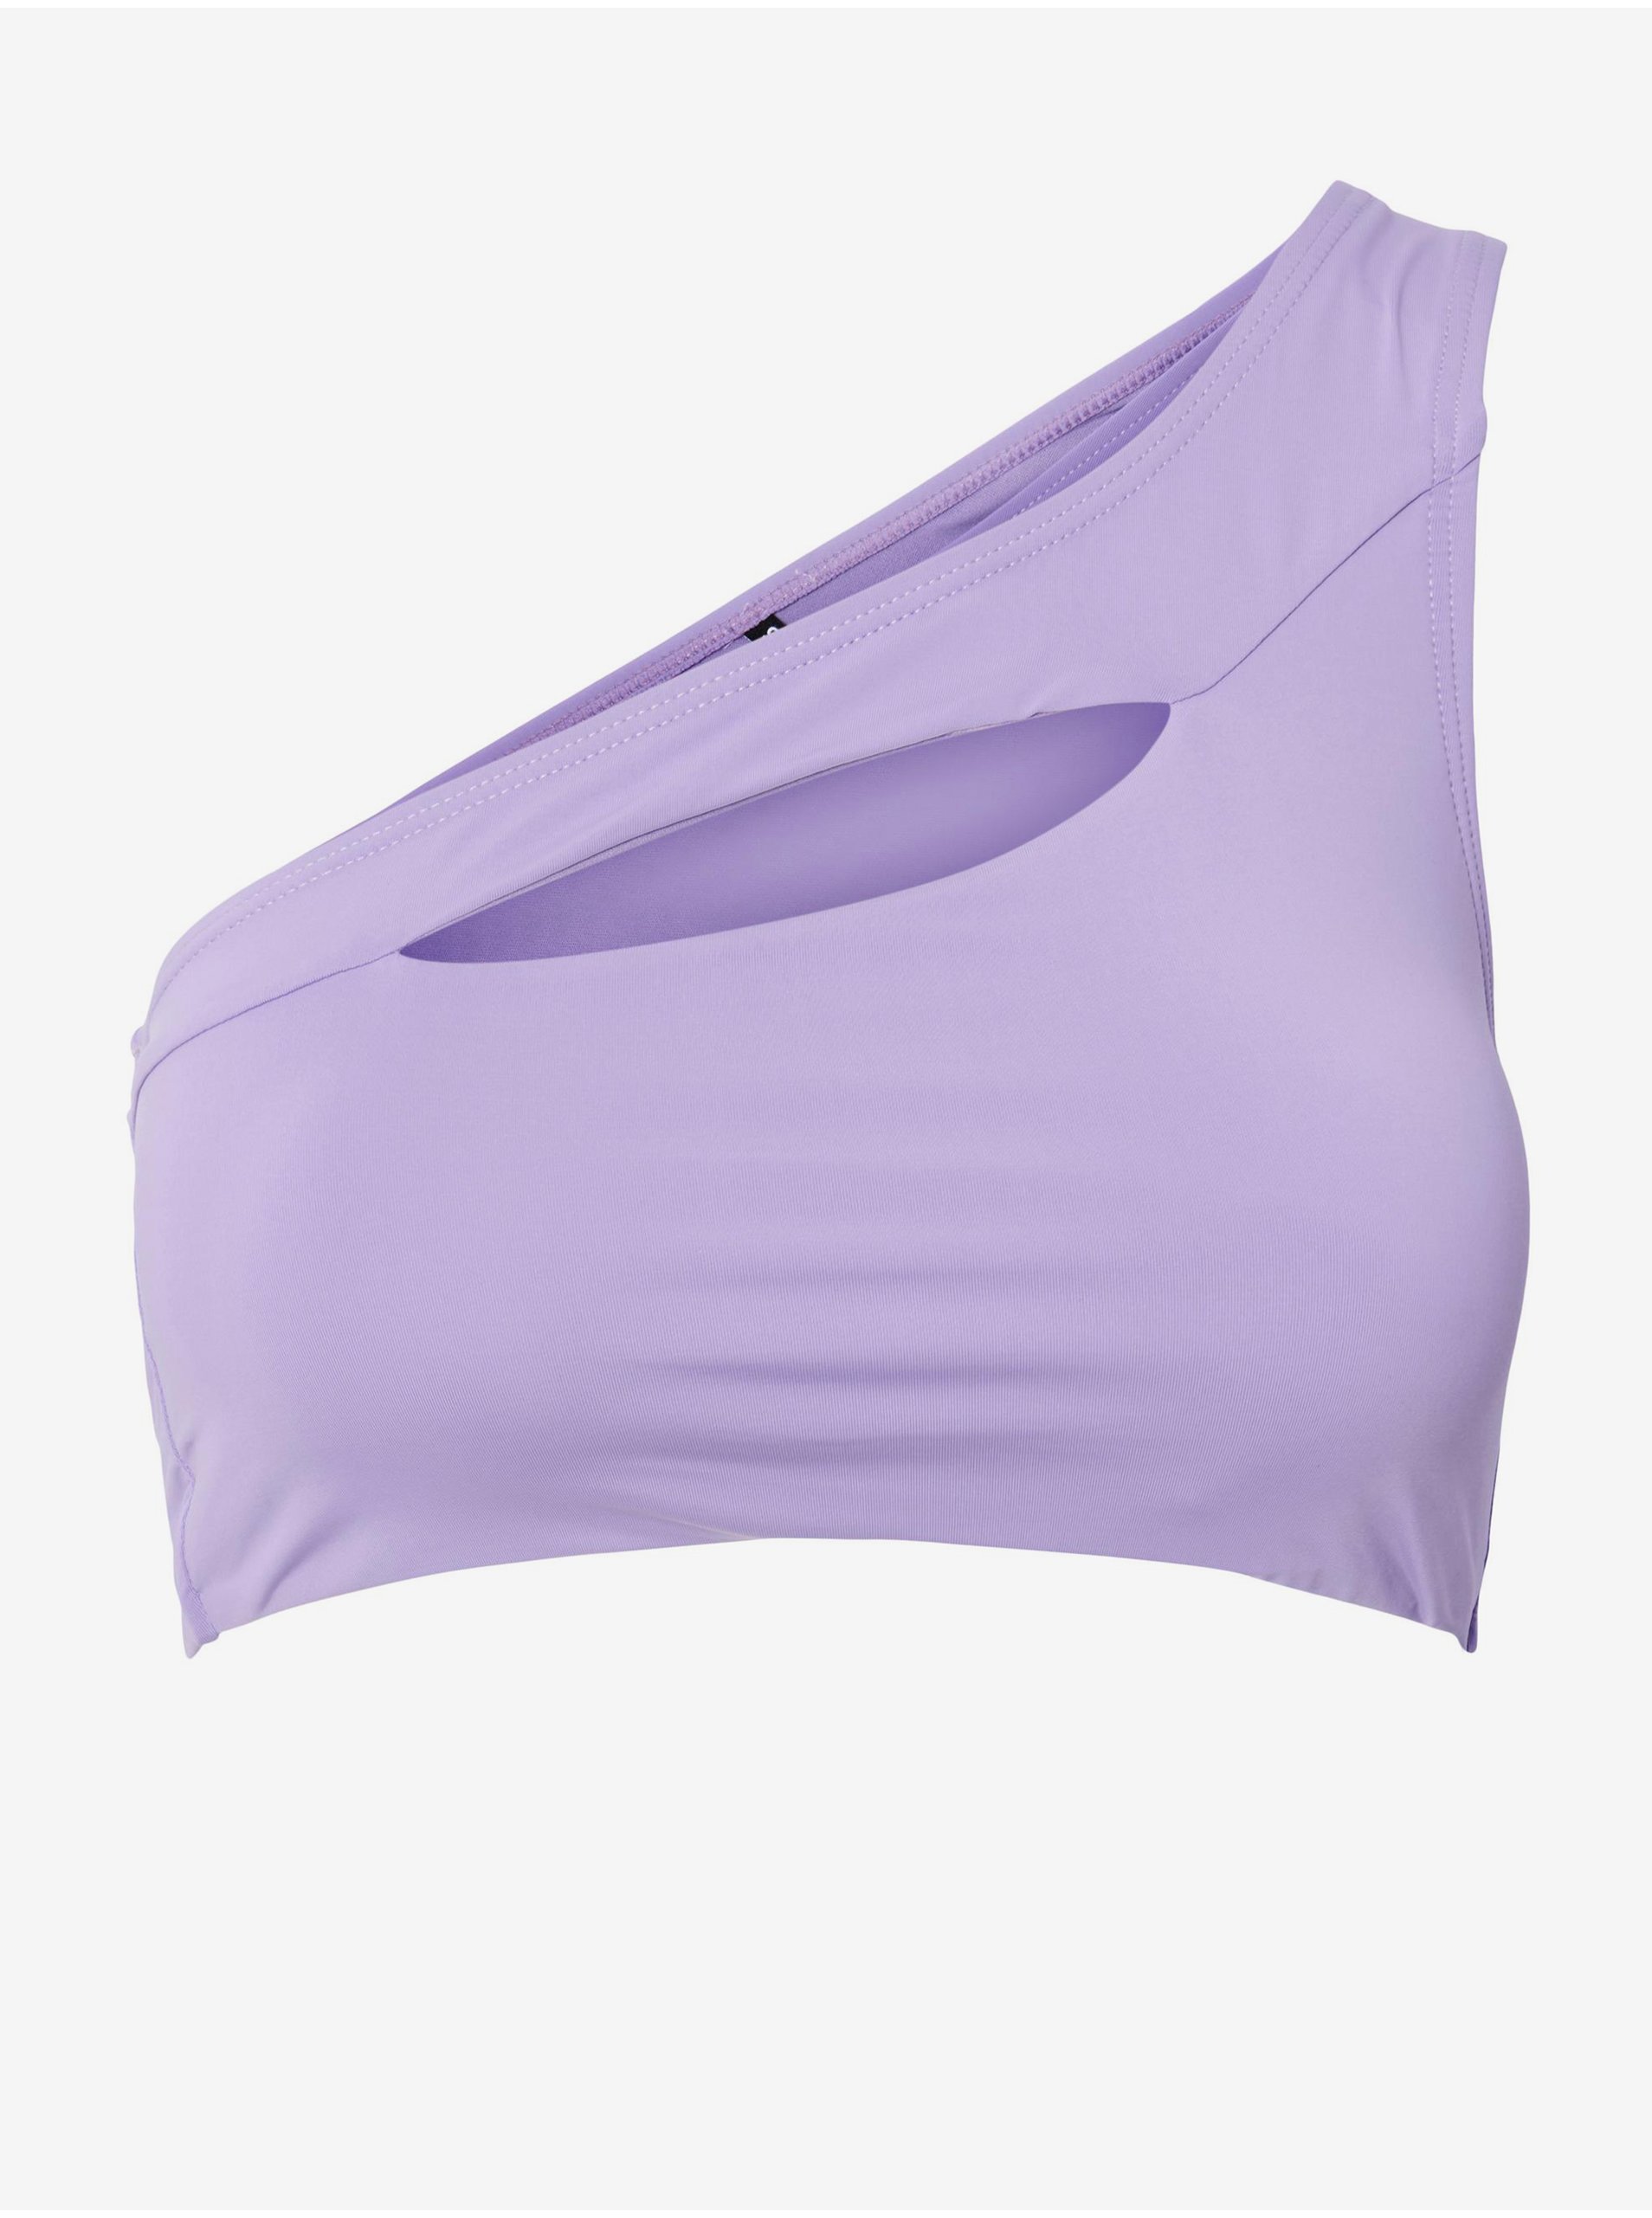 E-shop Světle fialový dámský vrchní díl plavek s průstřihem Pieces Bara